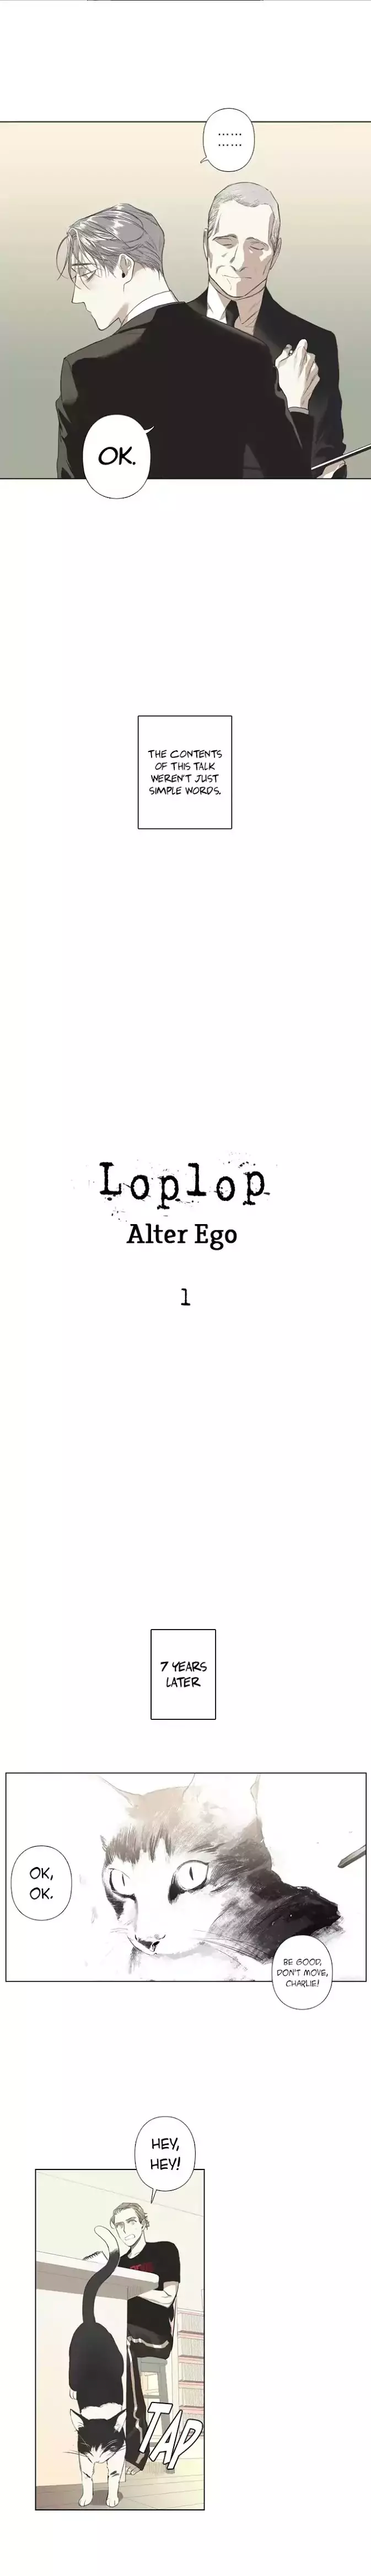 Loplop - 1 page 7-dd52ca31